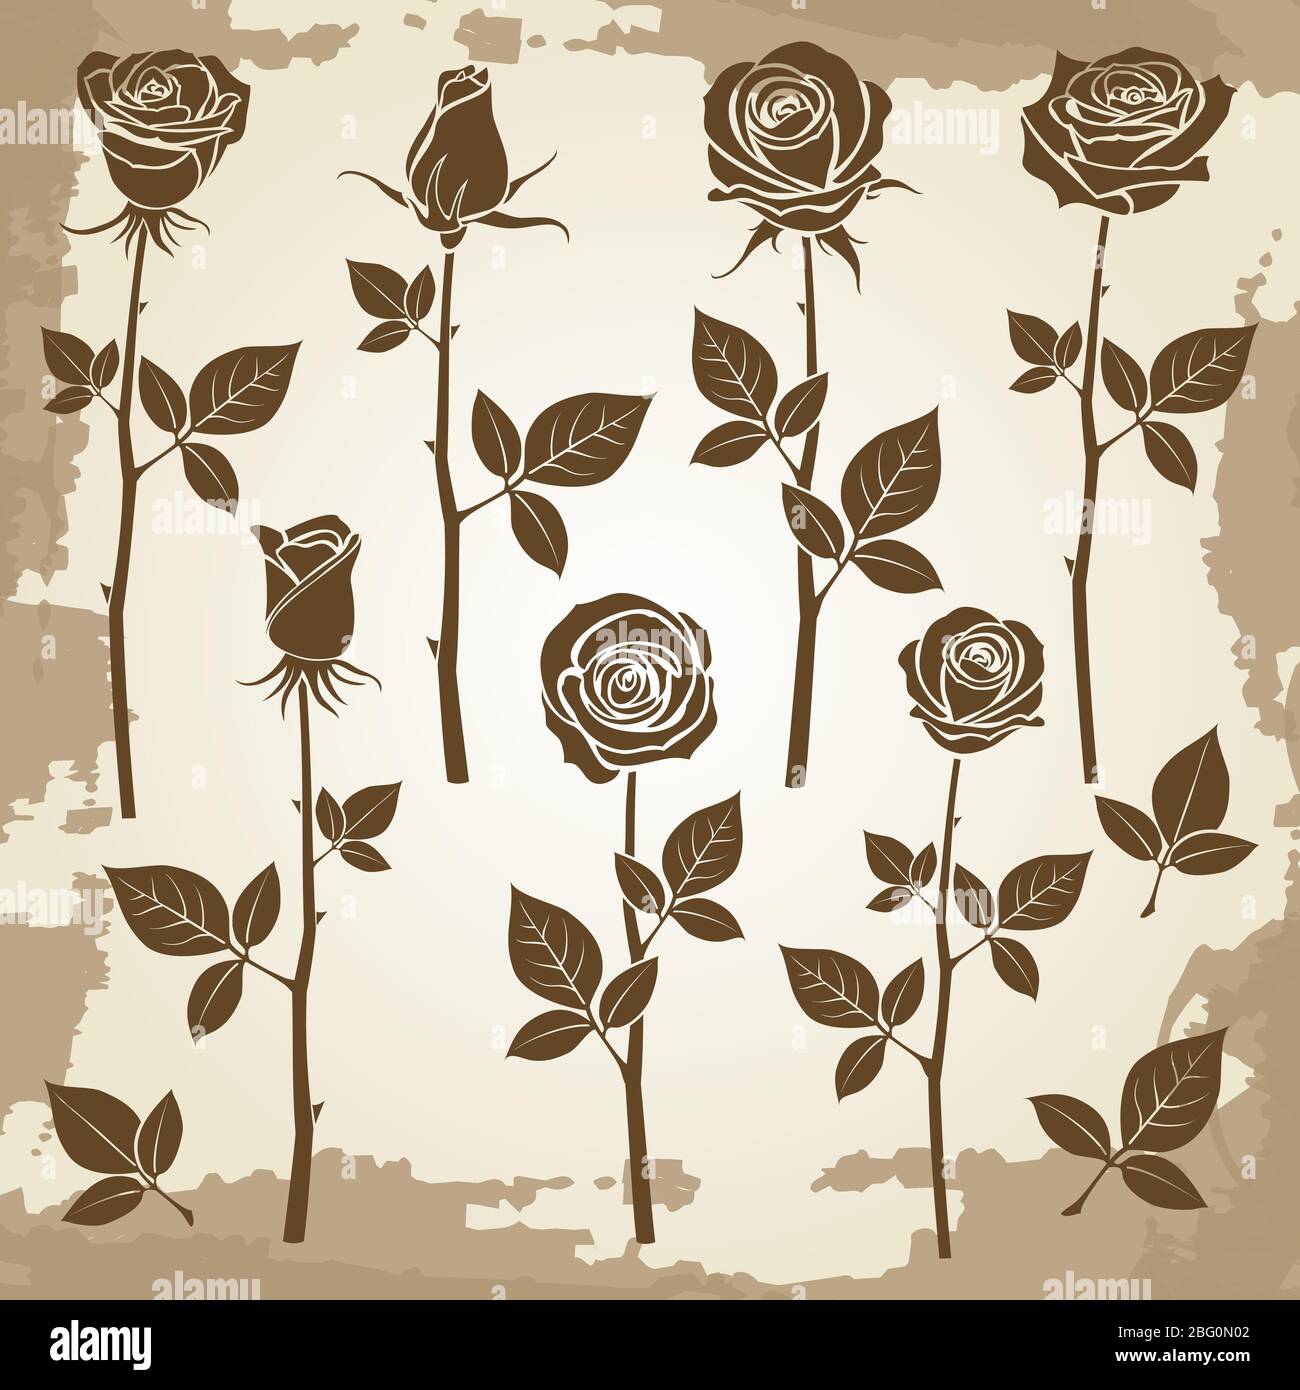 Vintage grunge rose silhouettes of set, spring buds symbols. Vector illustration Stock Vector